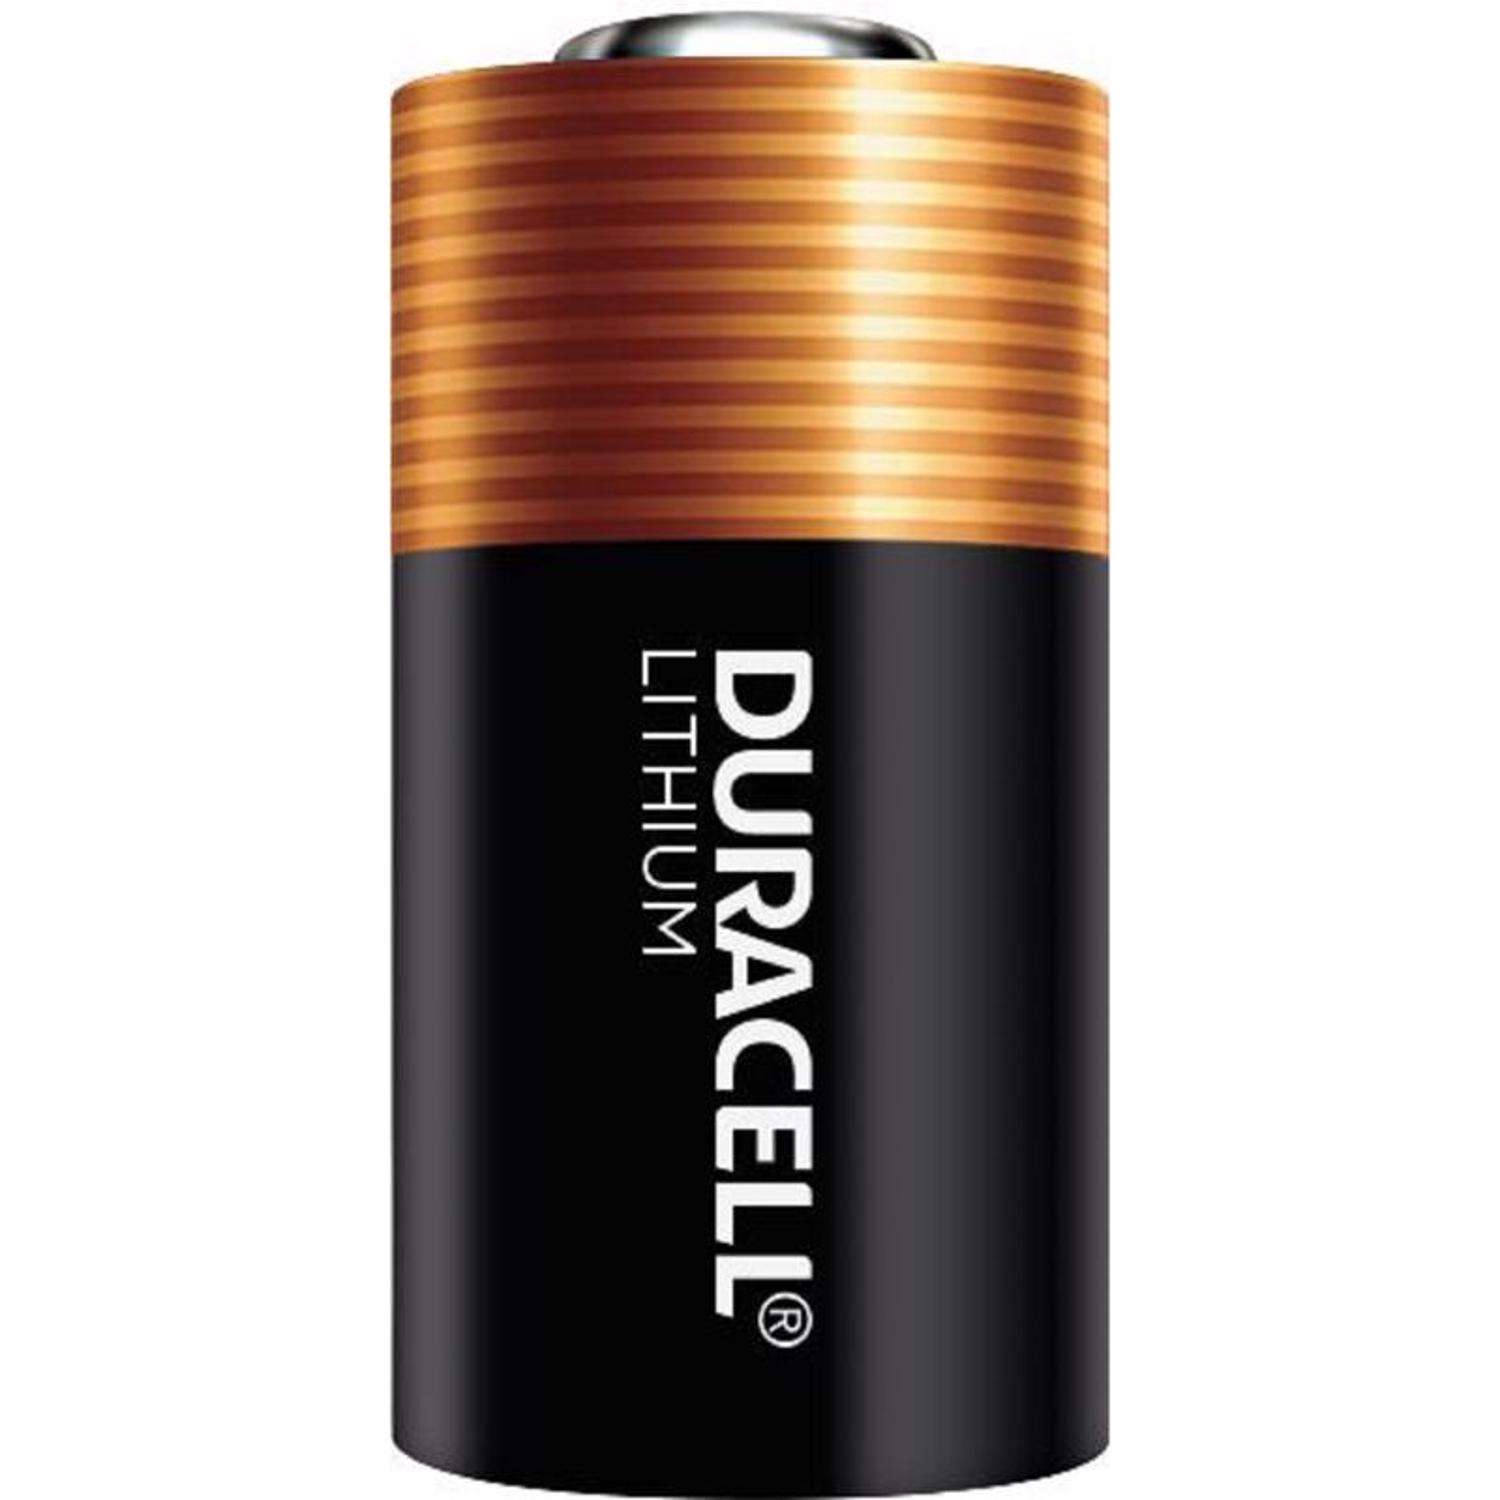 Duracell Lithium 123 3 V Battery 035755